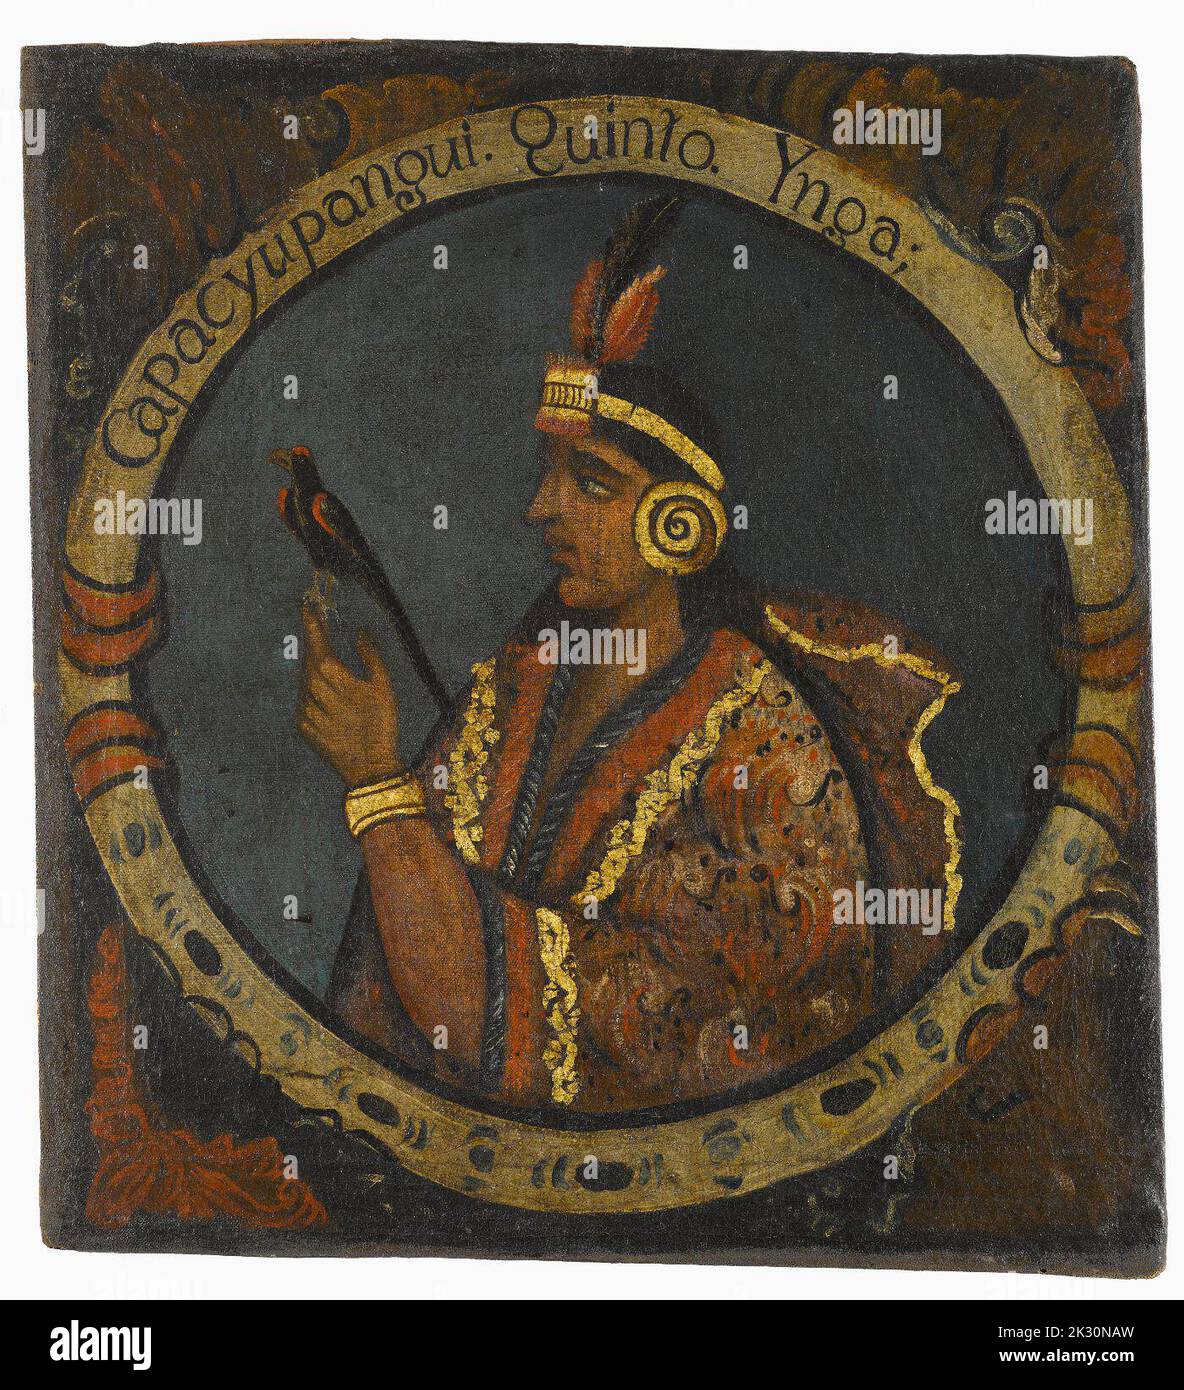 Ritratto di Capac Yupanqui, Quinta Inca, peruviano, pittura ad olio, metà 1800 Foto Stock